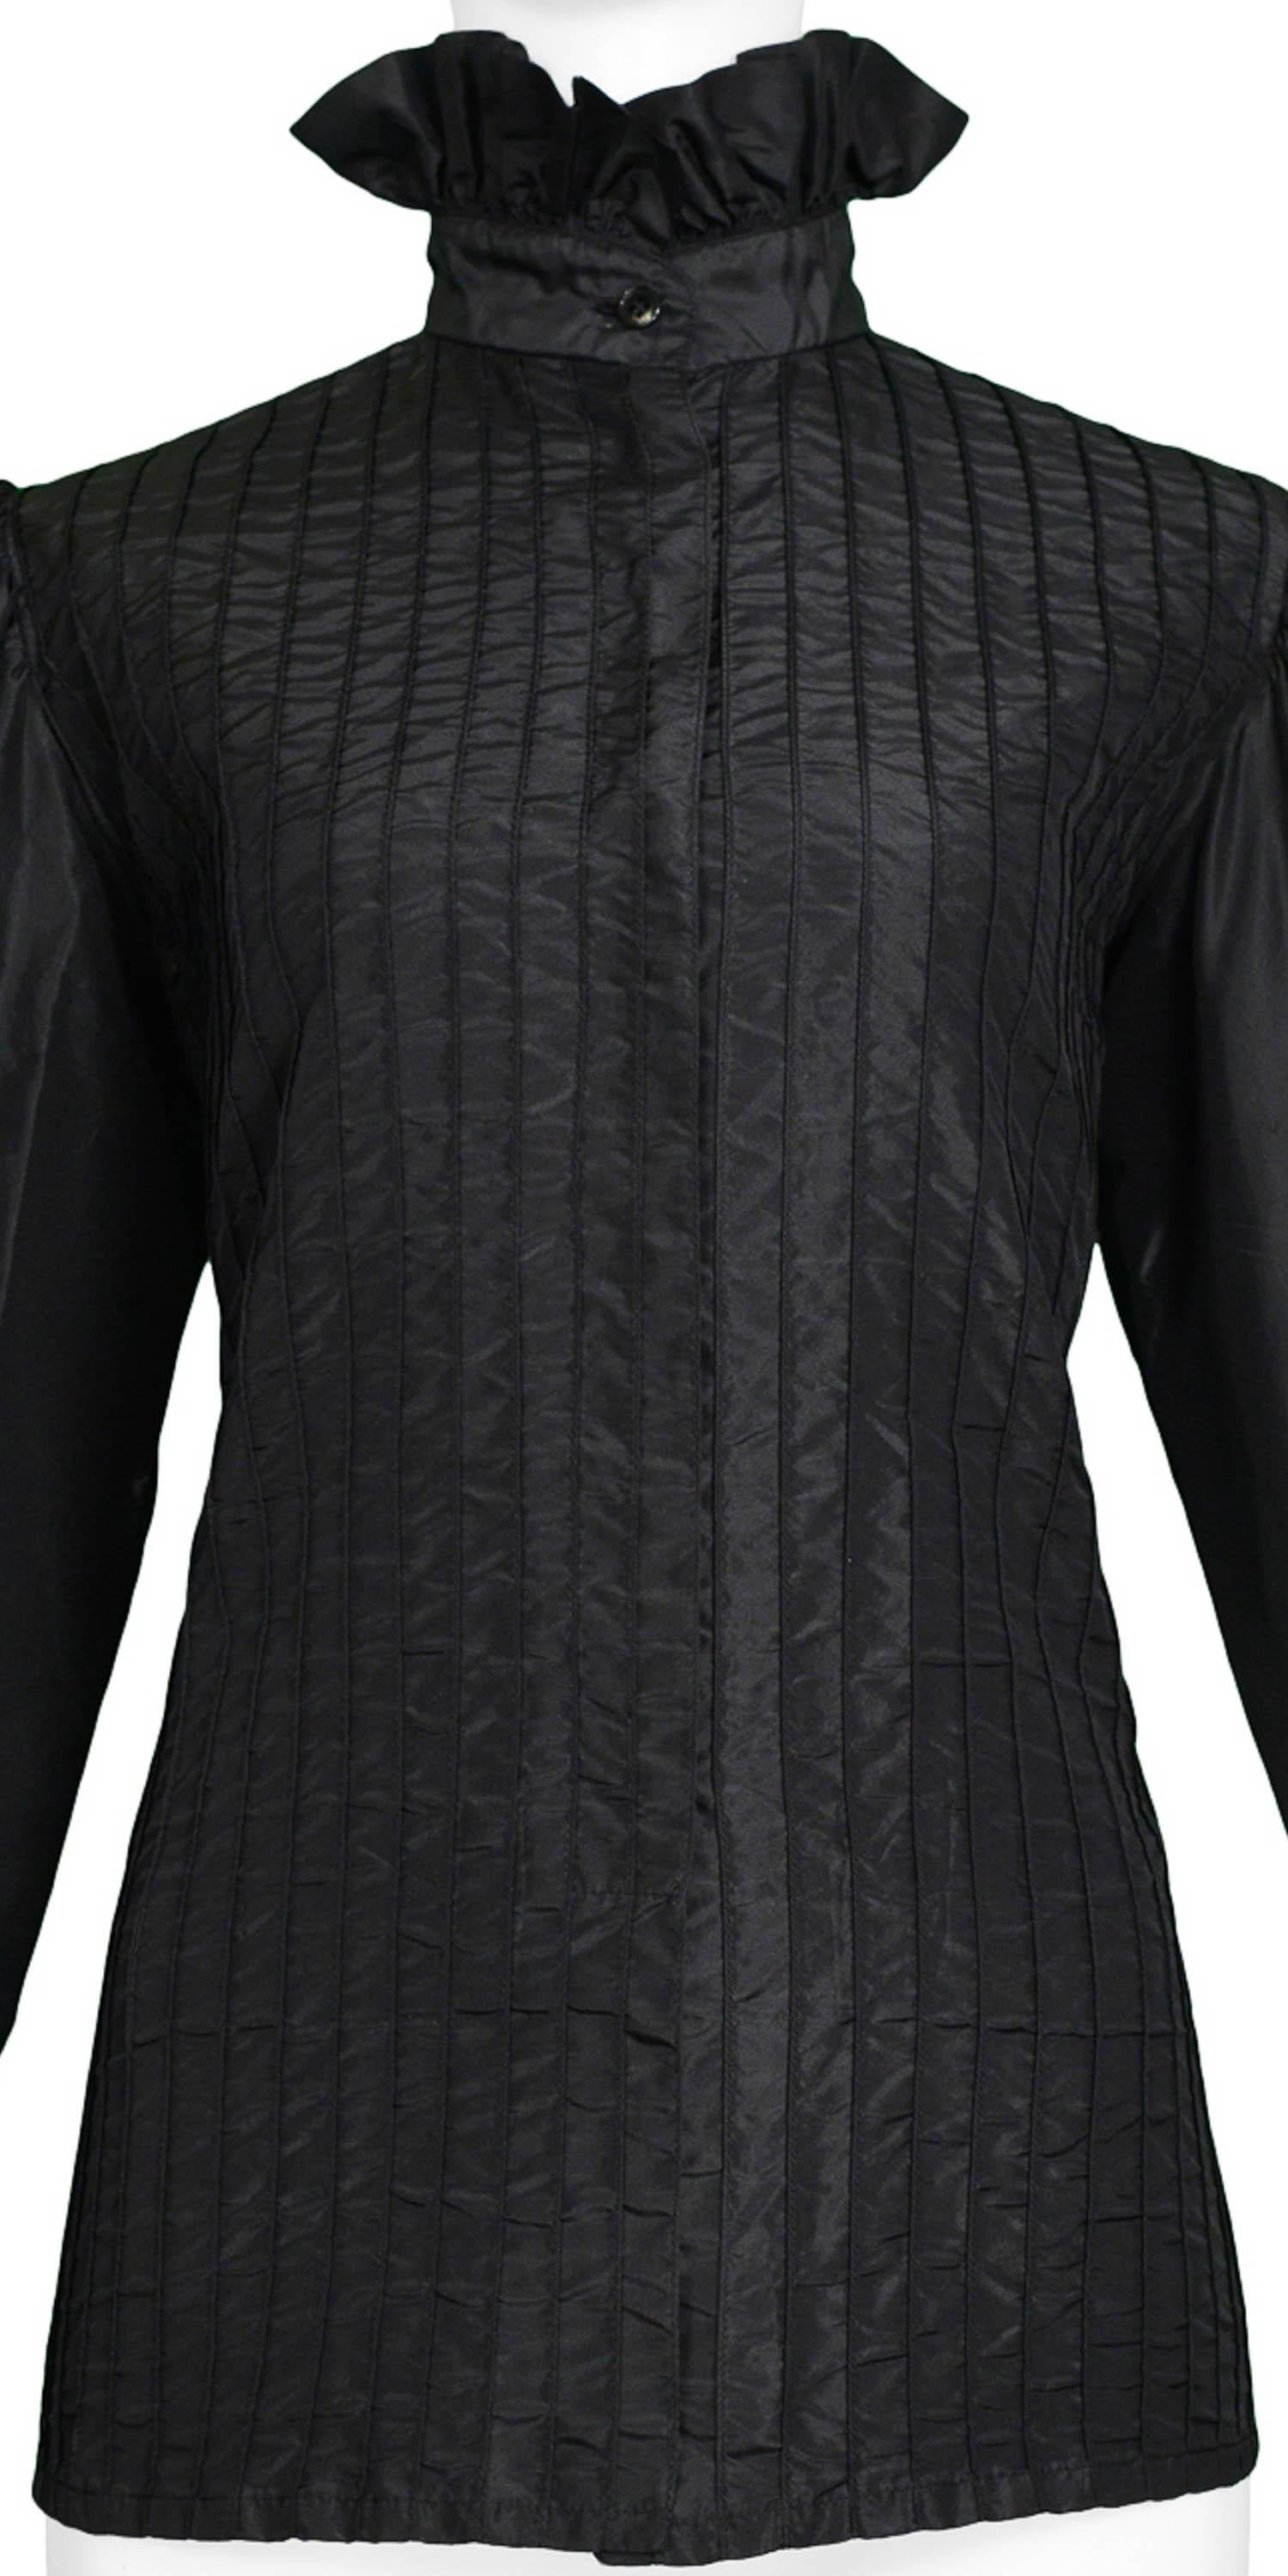 black taffeta blouse